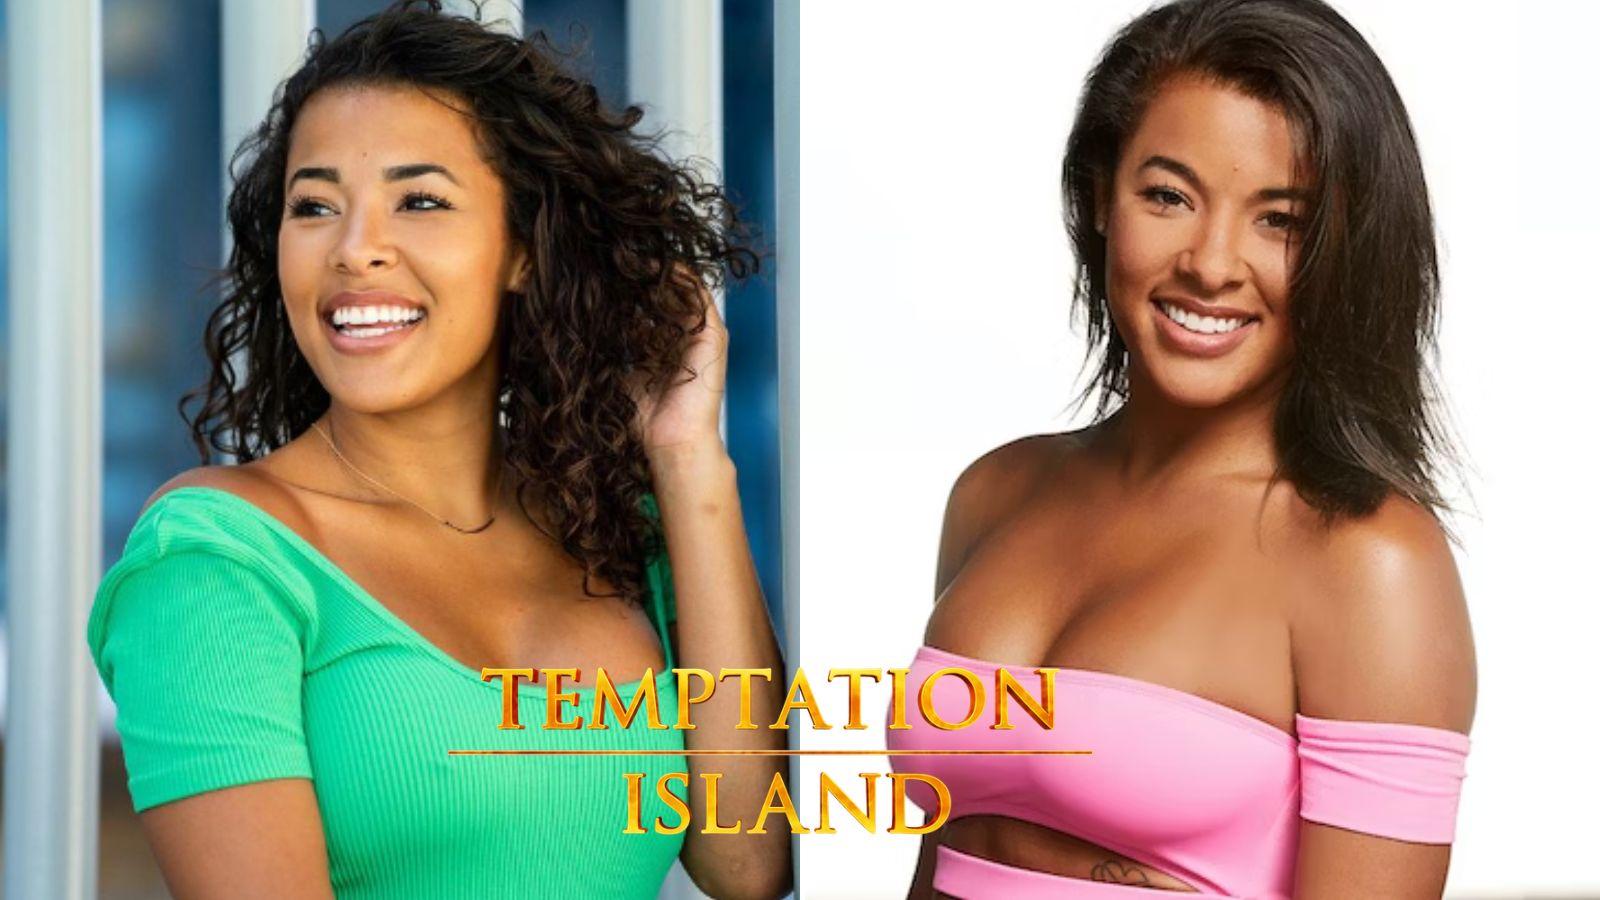 Morgan from Temptation Island